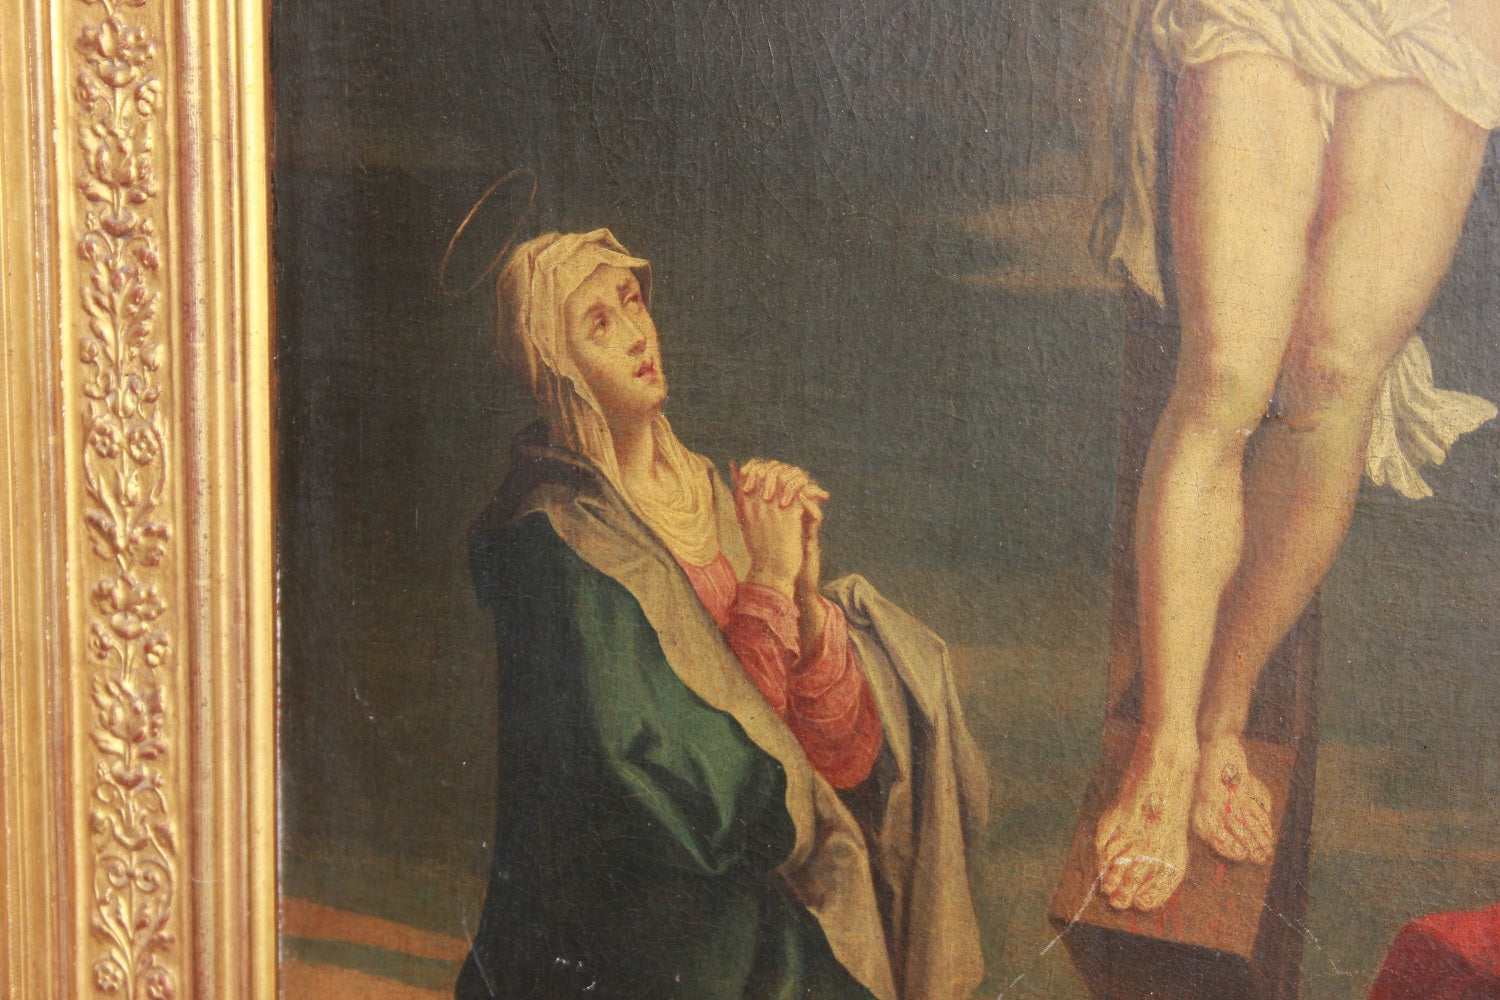 Olio su Tela Francese del XVIII secolo 1700 Raffigurante Crocifissione